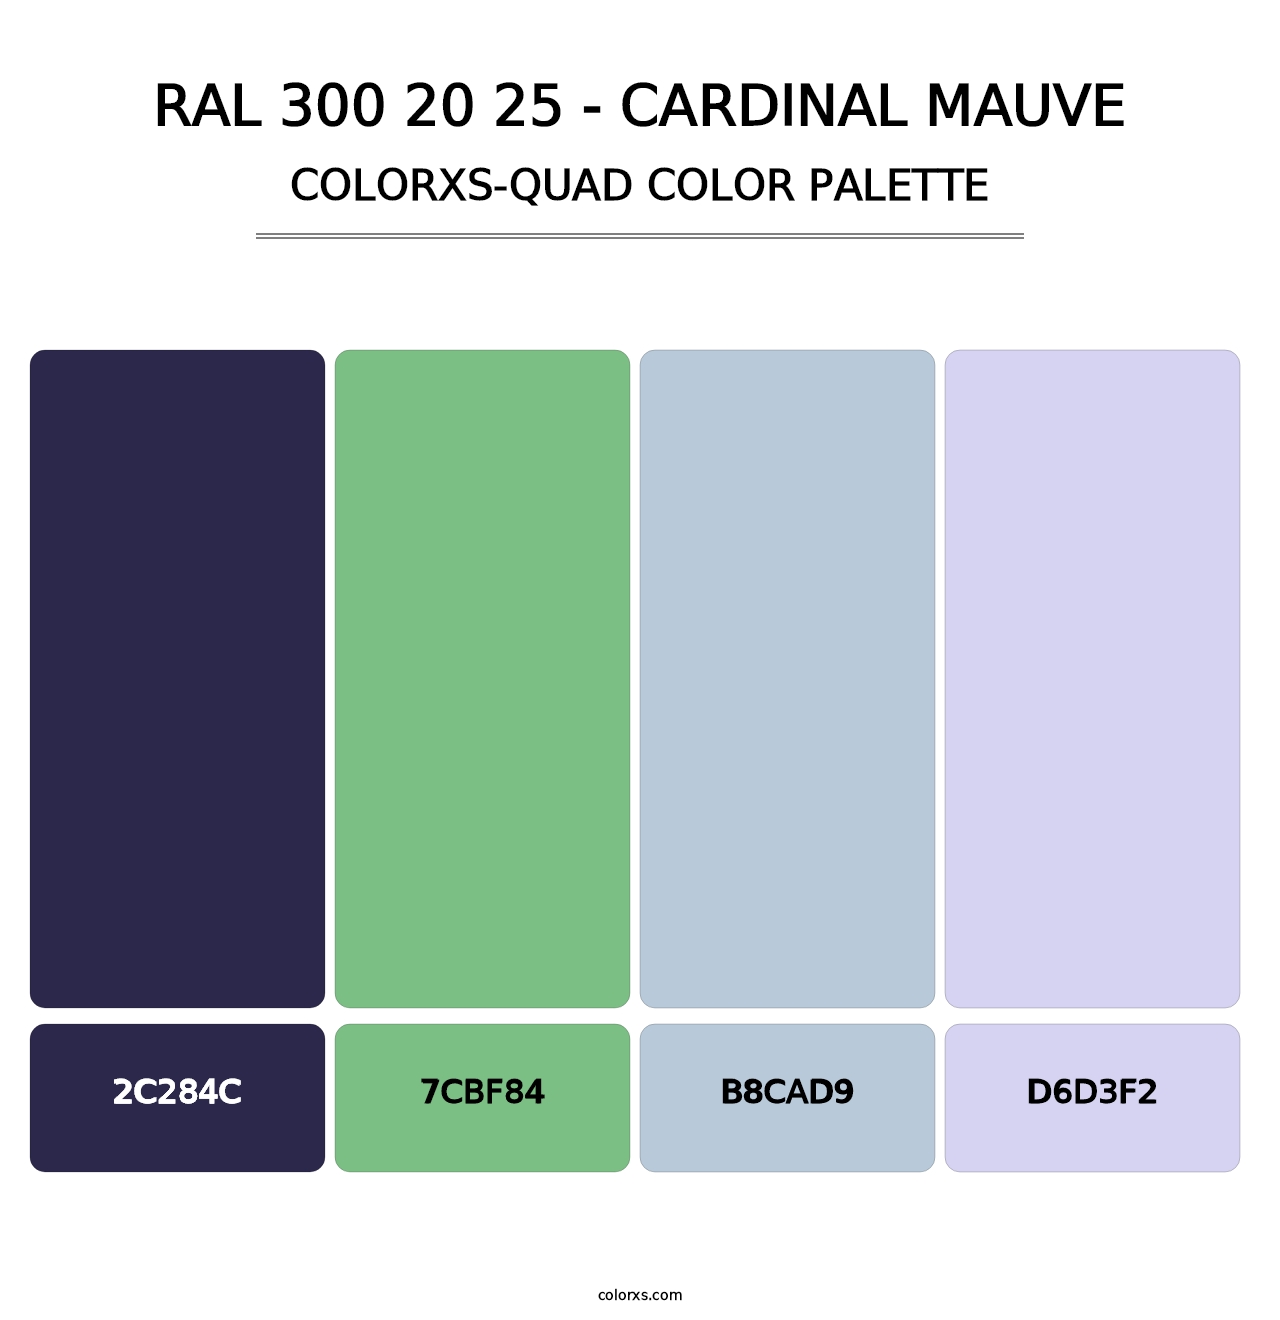 RAL 300 20 25 - Cardinal Mauve - Colorxs Quad Palette